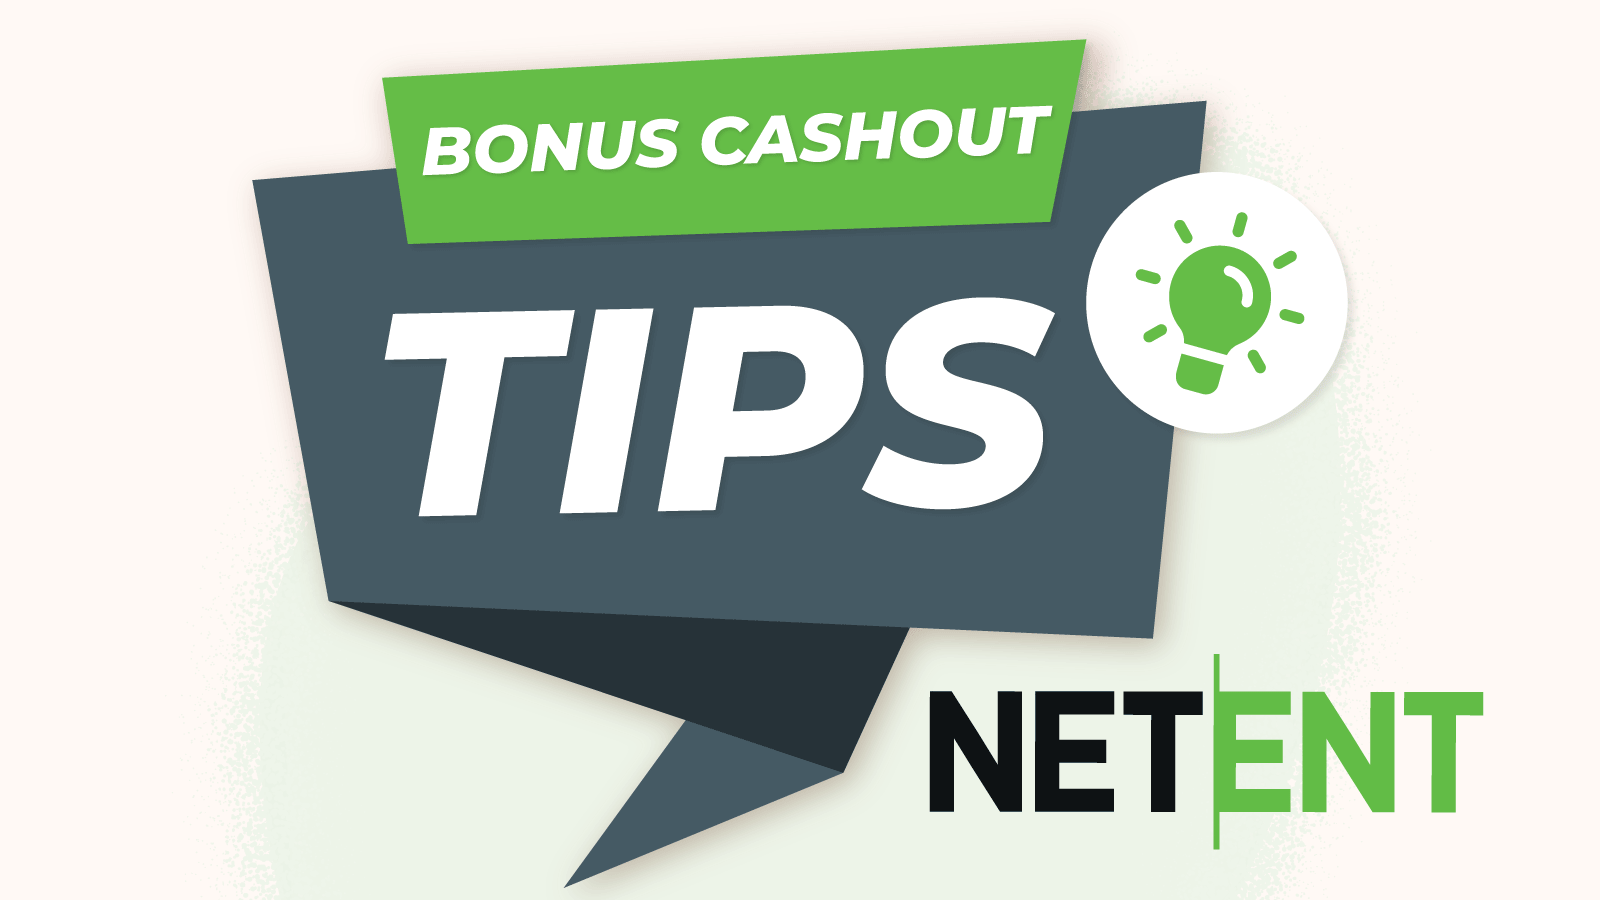 Tips for fast NetEnt casino bonus cashout